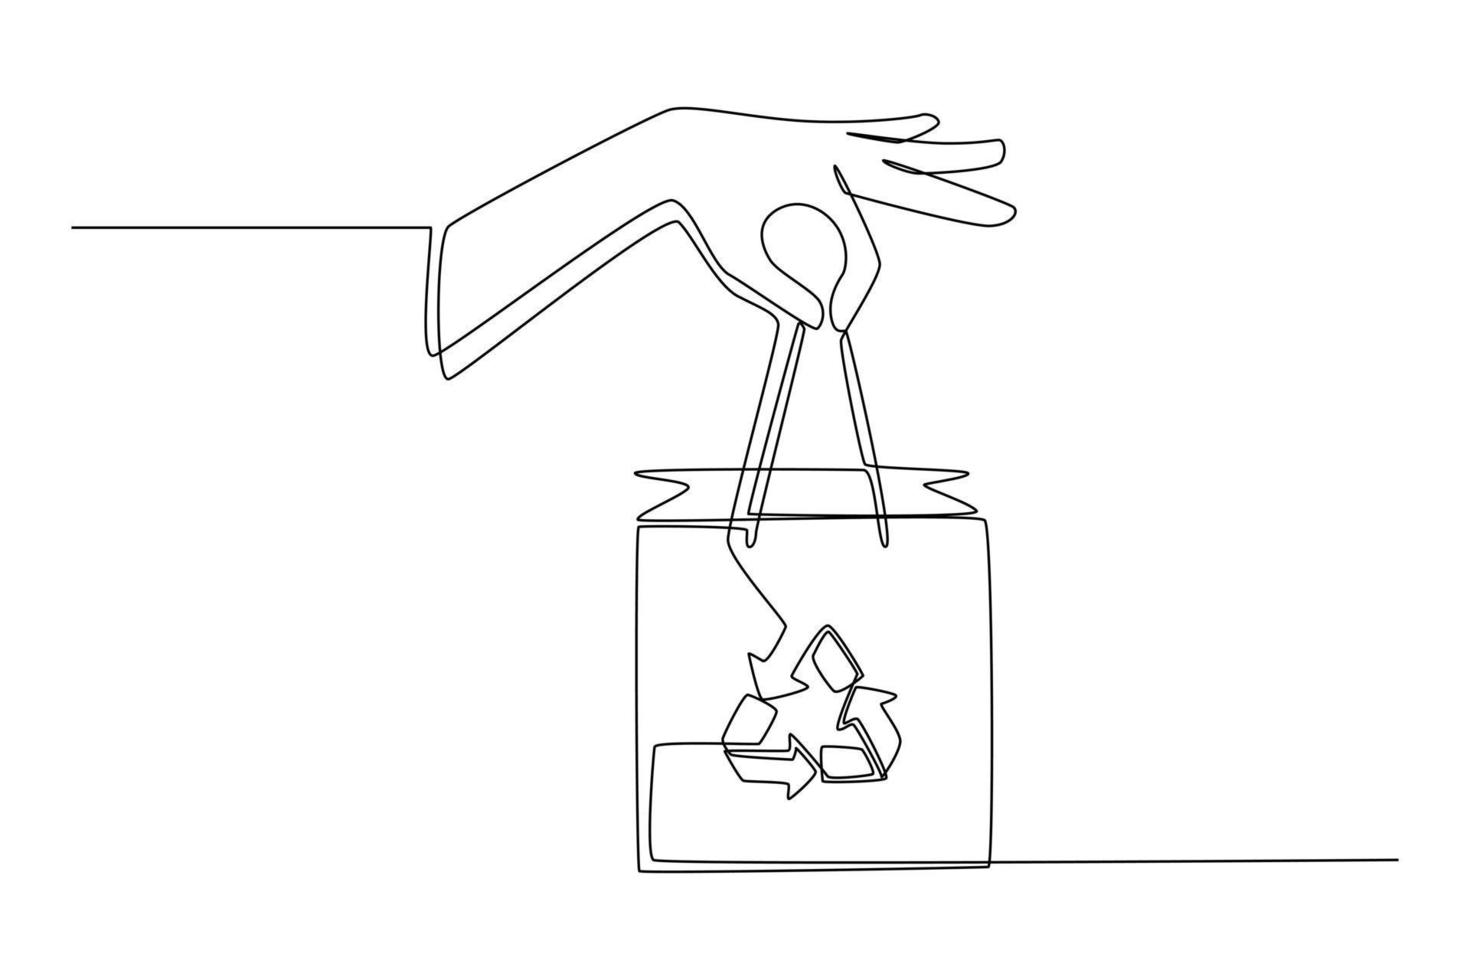 bolsa de embalaje ecológico de mano de dibujo continuo de una línea. concepto de embalaje ecológico. ilustración gráfica vectorial de diseño de dibujo de una sola línea. vector